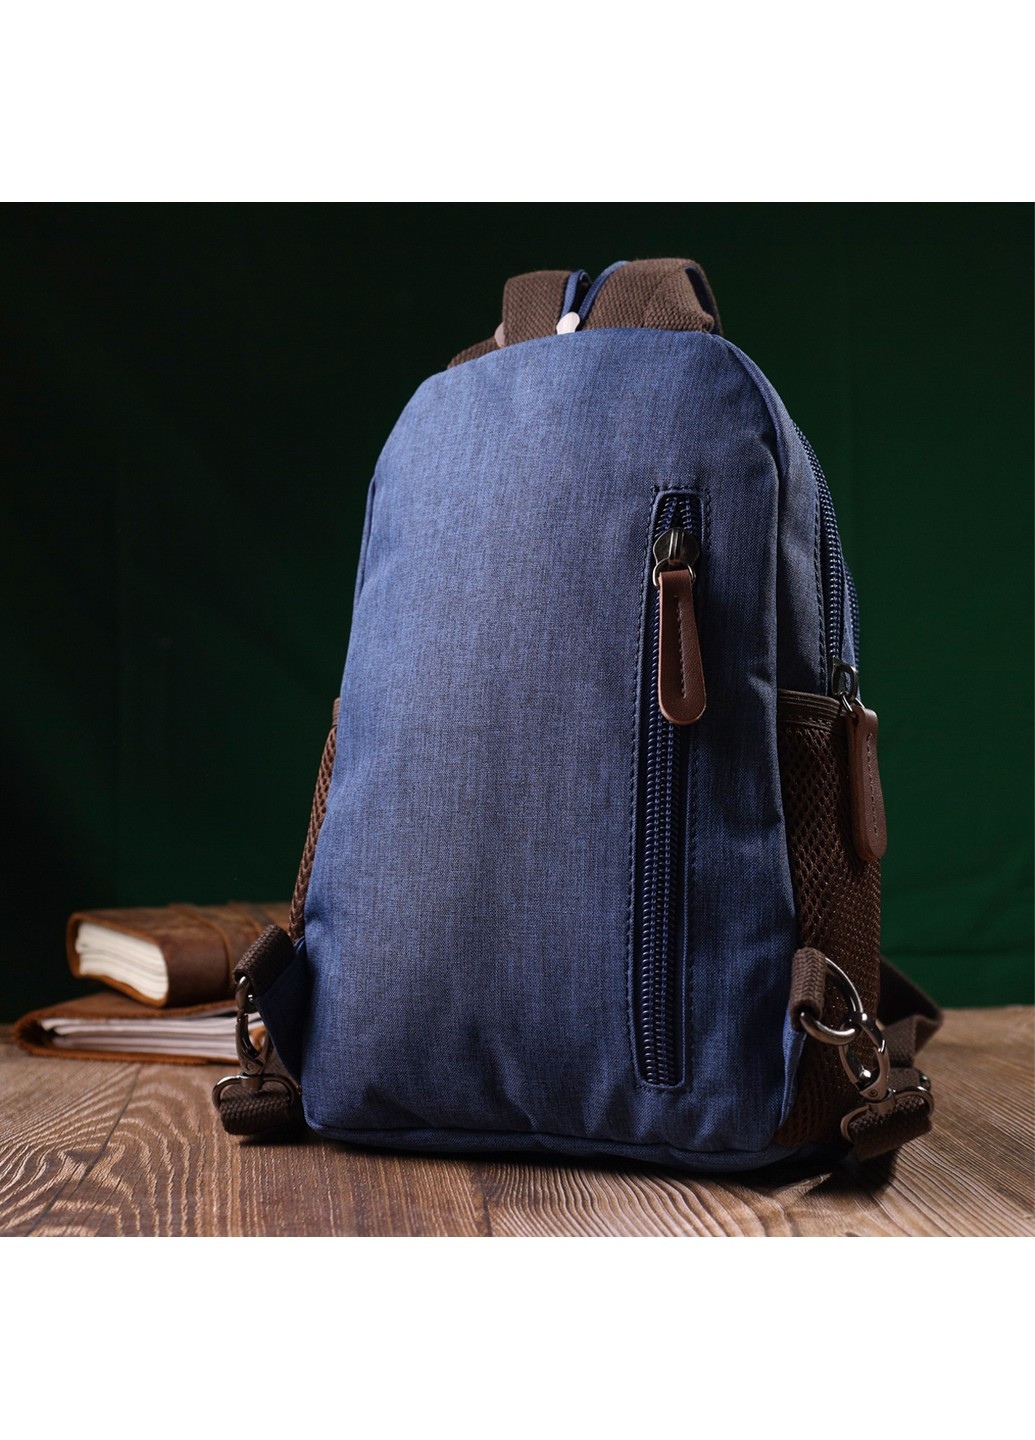 Надежный рюкзак из полиэстера с большим количеством карманов 22146 Синий Vintage (267925284)